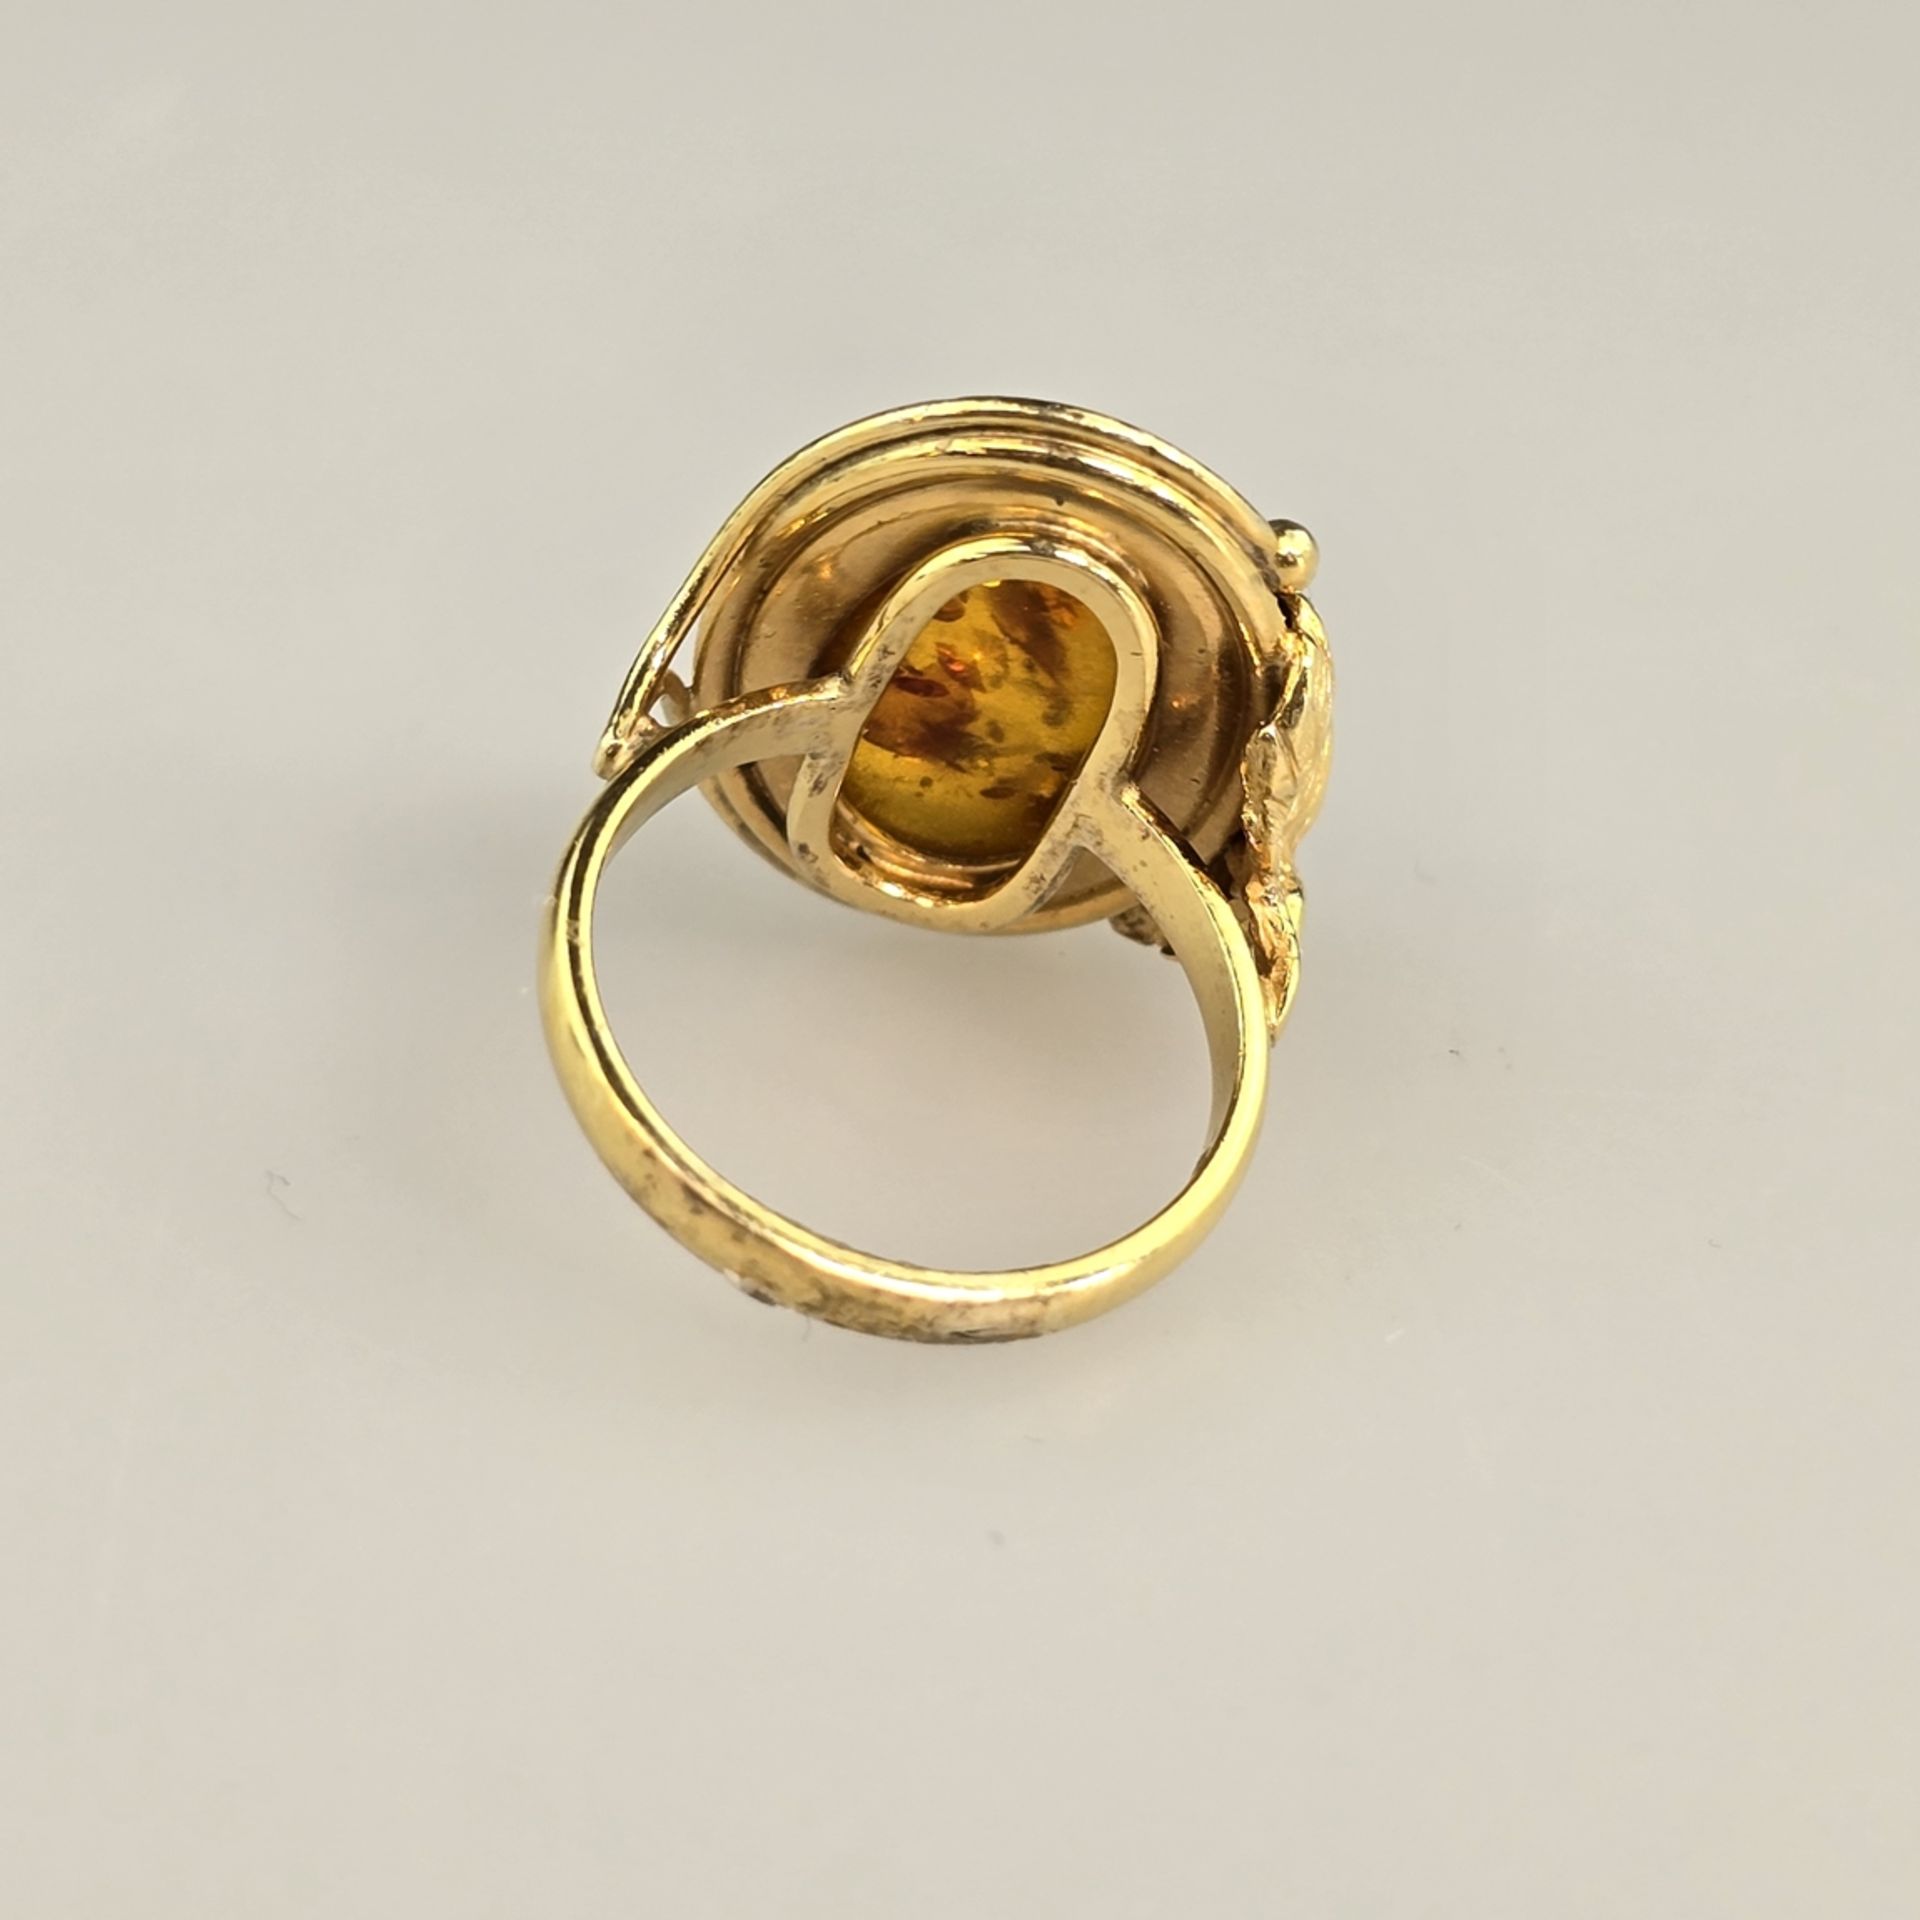 Bernsteinring - Silber 925/000, vergoldet, außen gestempelt, Bernstein von ca.18 x 12 mm, Ringgröße - Image 7 of 8